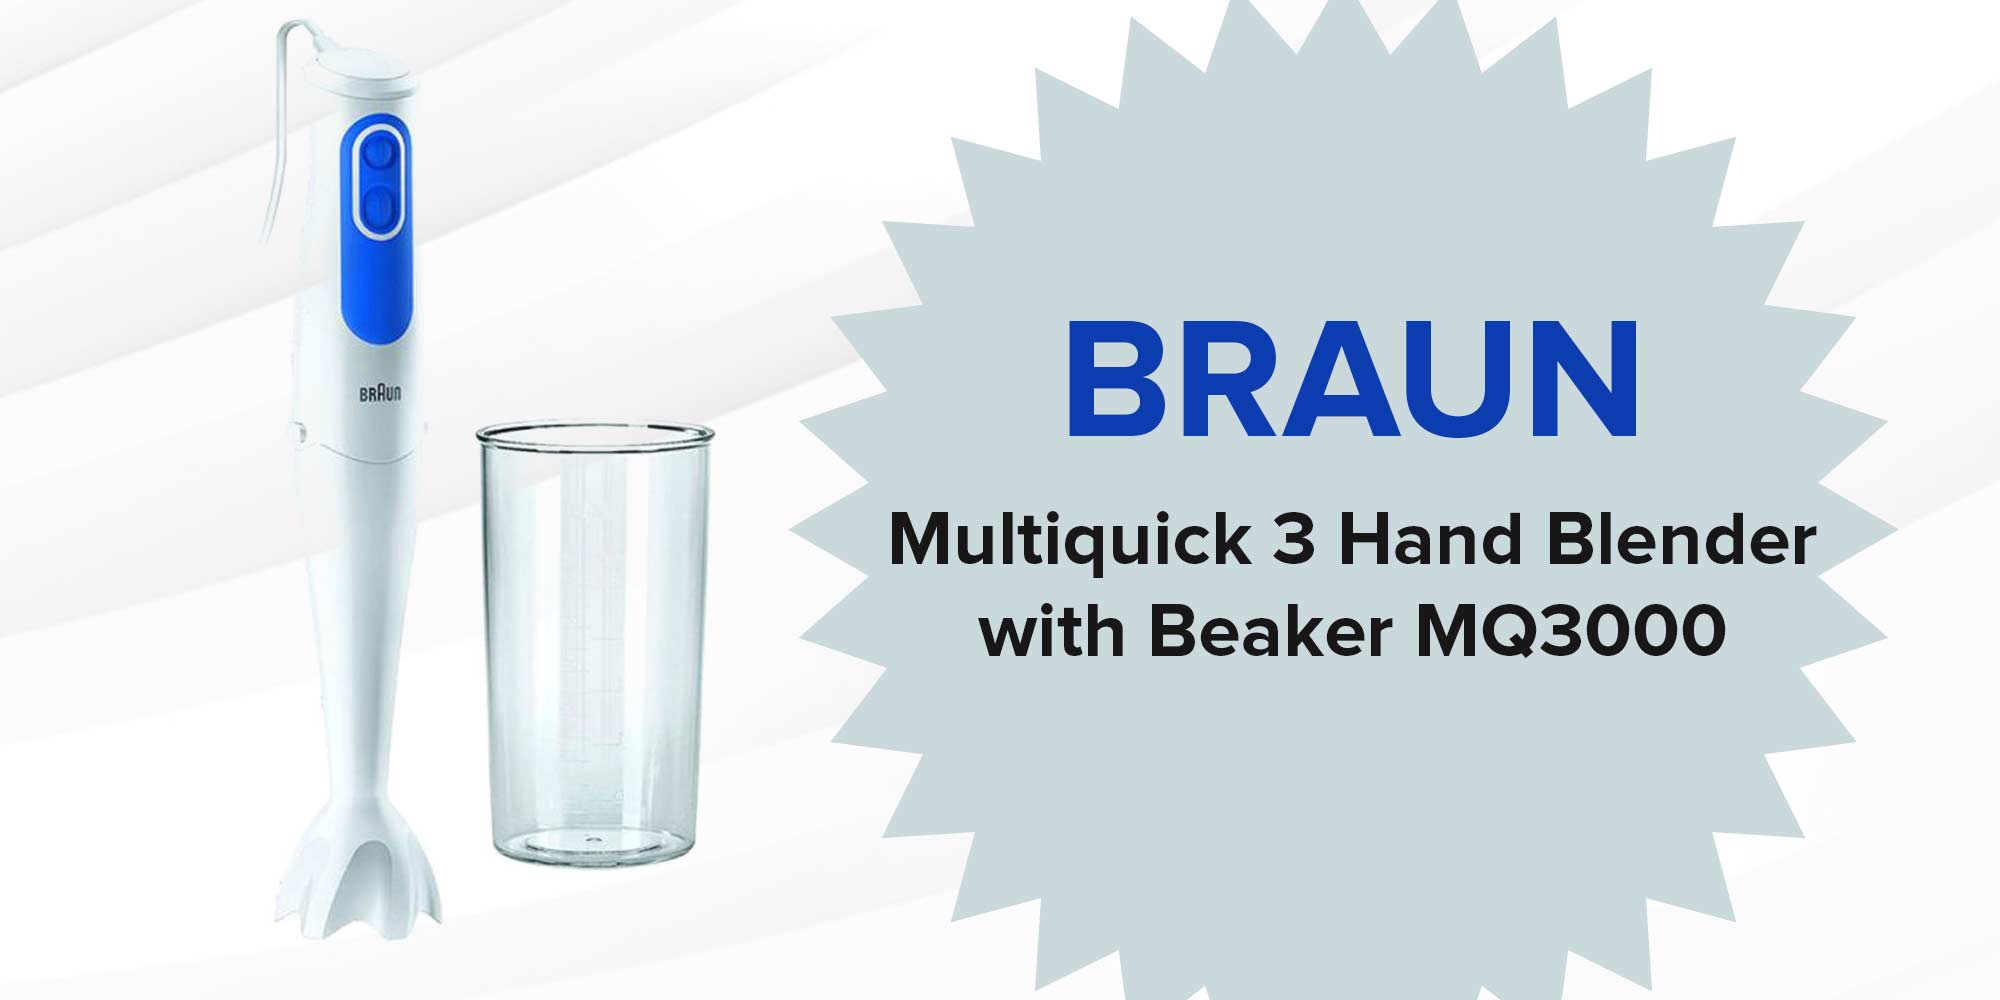 Hand Blender With Beaker Minipimer 3 MQ3000 Smoothie White/Blue/Clear